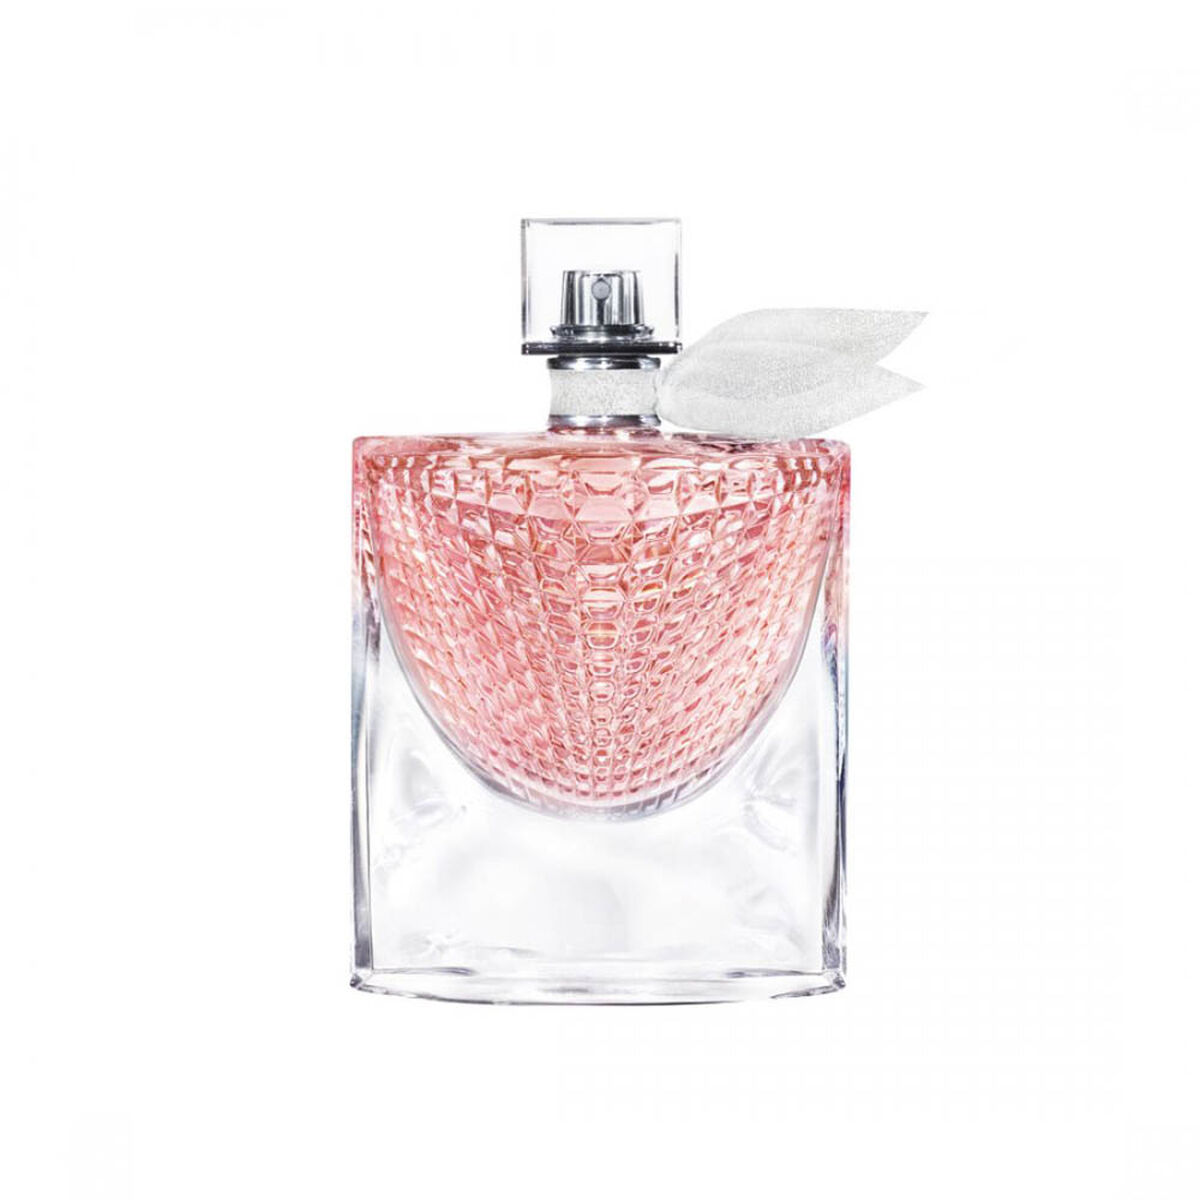 Perfume Lancome LVEB L'Éclat 75 ml